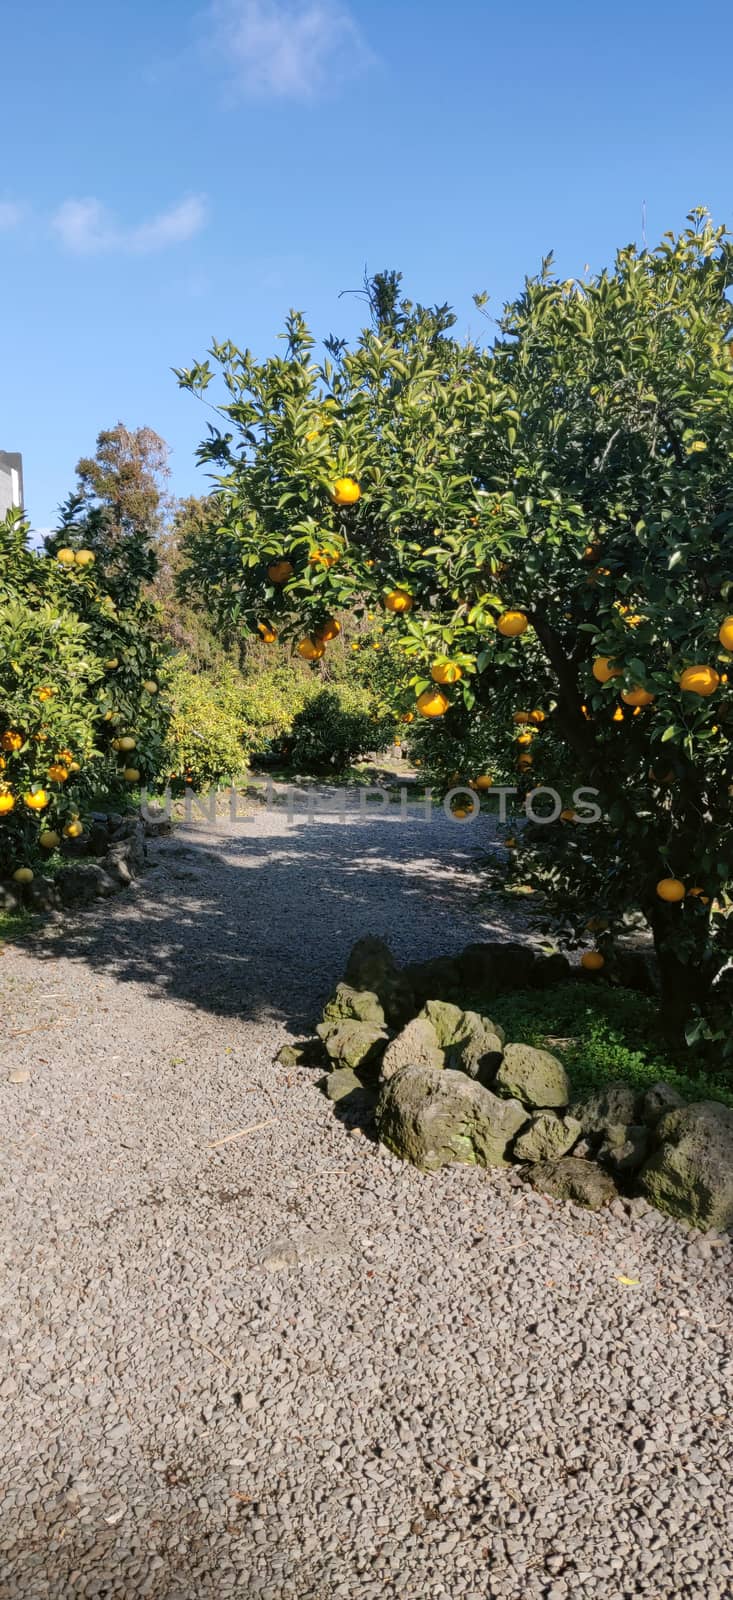 A tangerine orange tree in a farm in jeju island, South korea